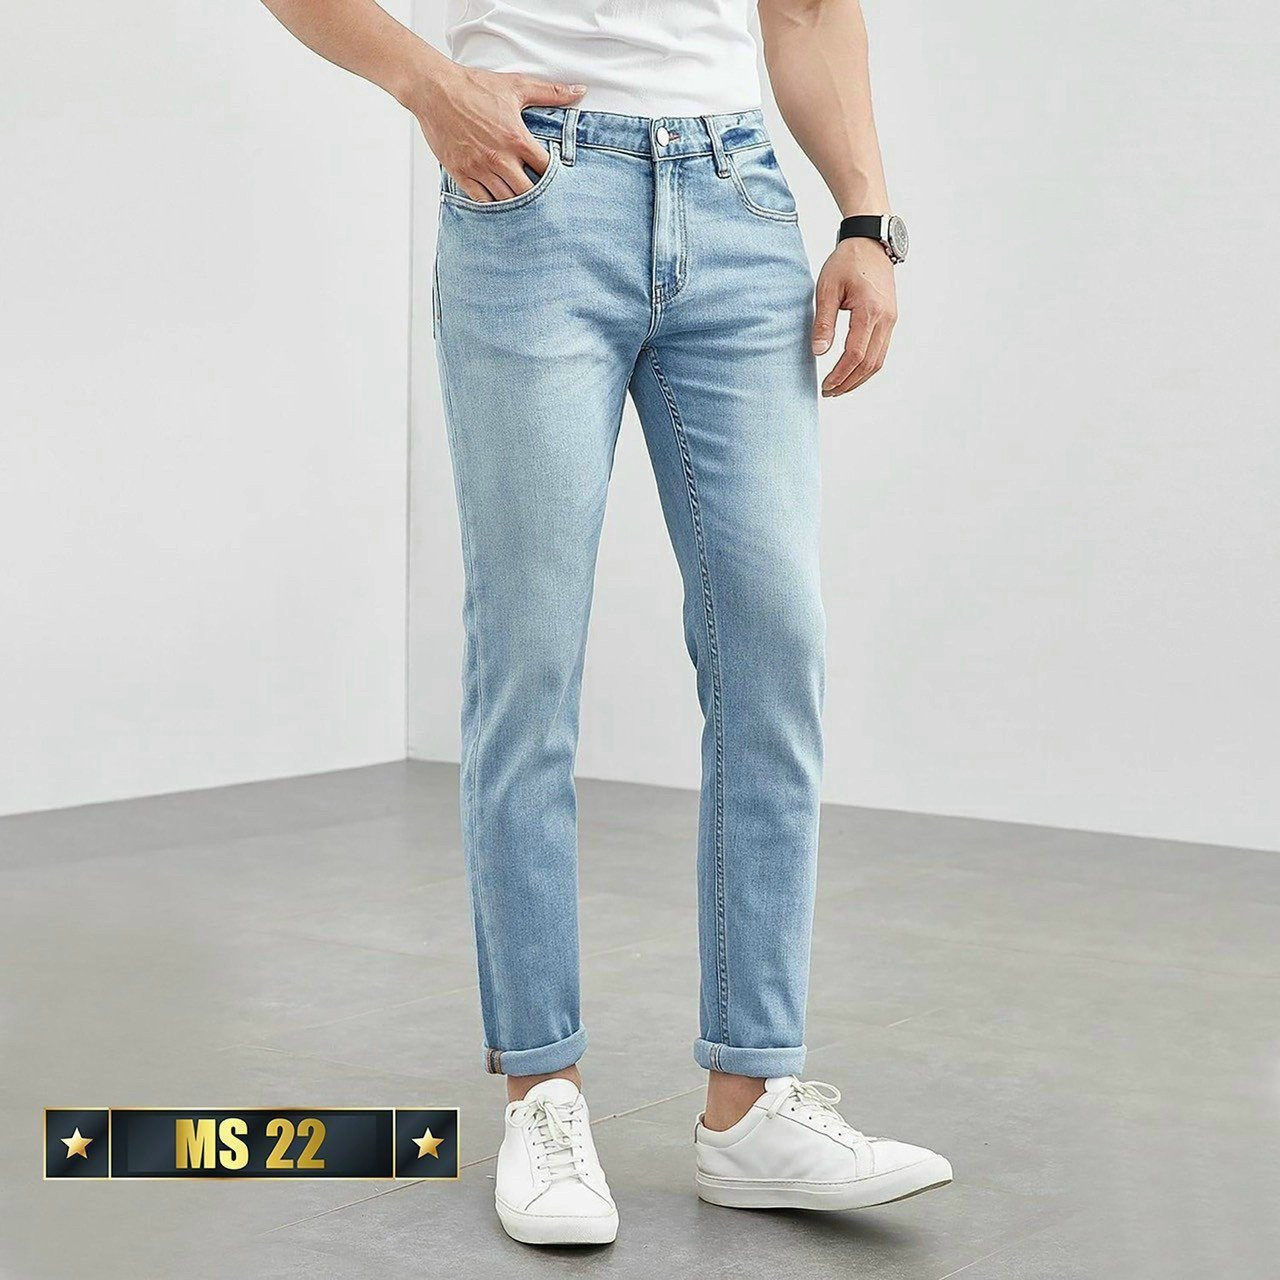 Quần jean nam chất bò cao cấp vải Jean co giãn 4 chiều cực đẹp form dáng skinny chuẩn_JEANCD212